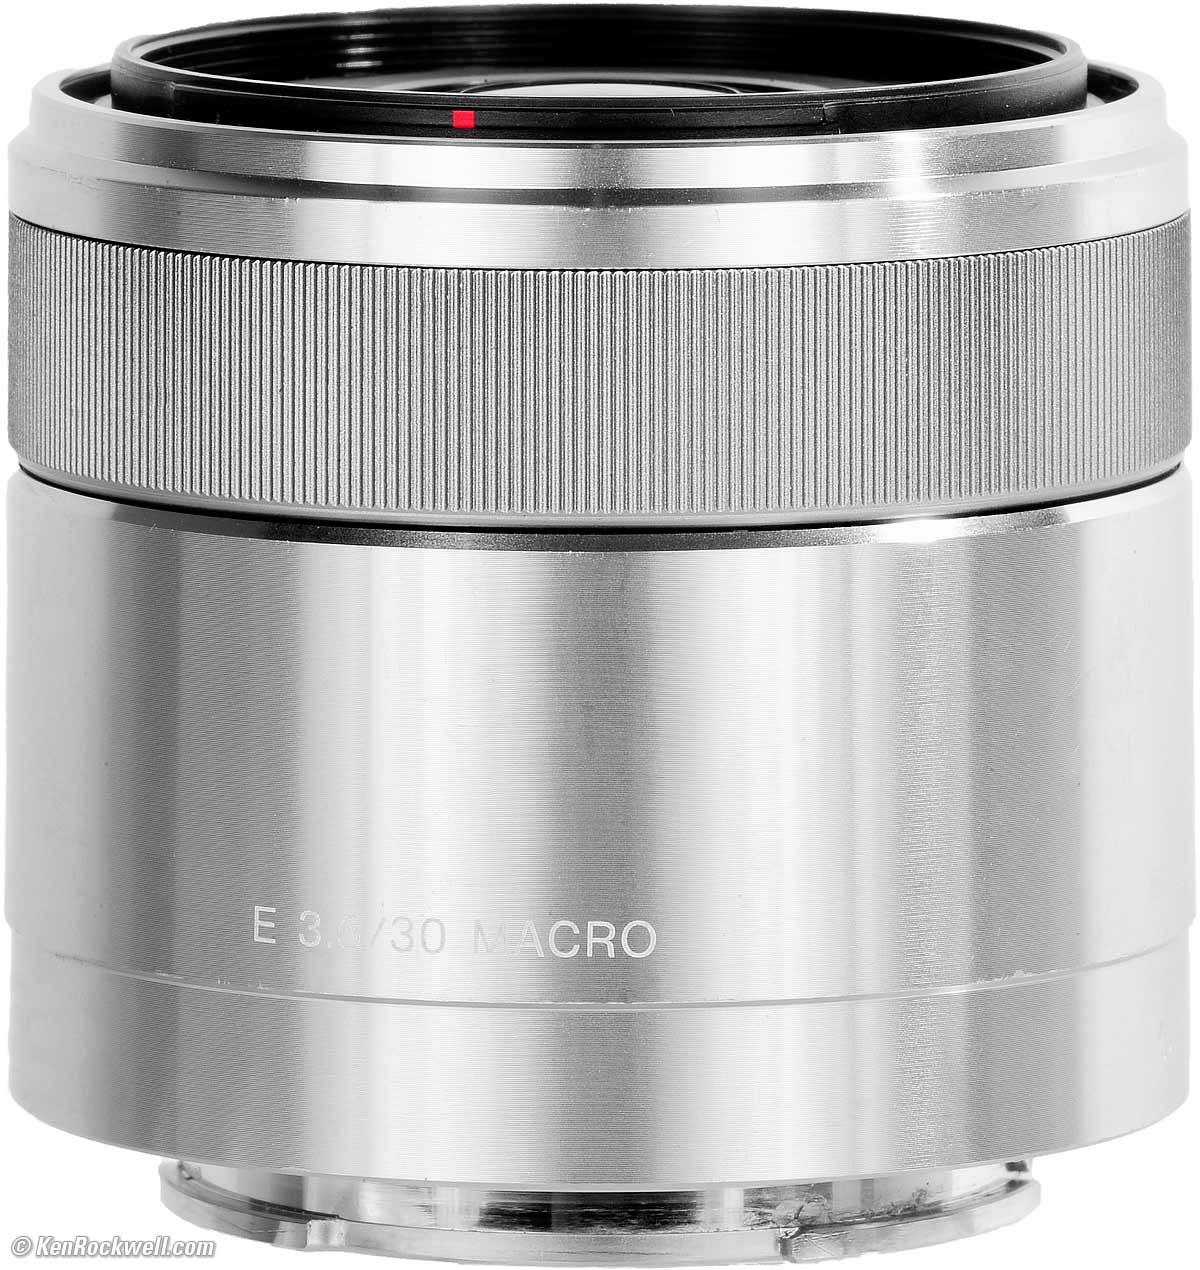 SONY E 30mm F3.5 MACRO レンズ SEL30M35 - レンズ(単焦点)